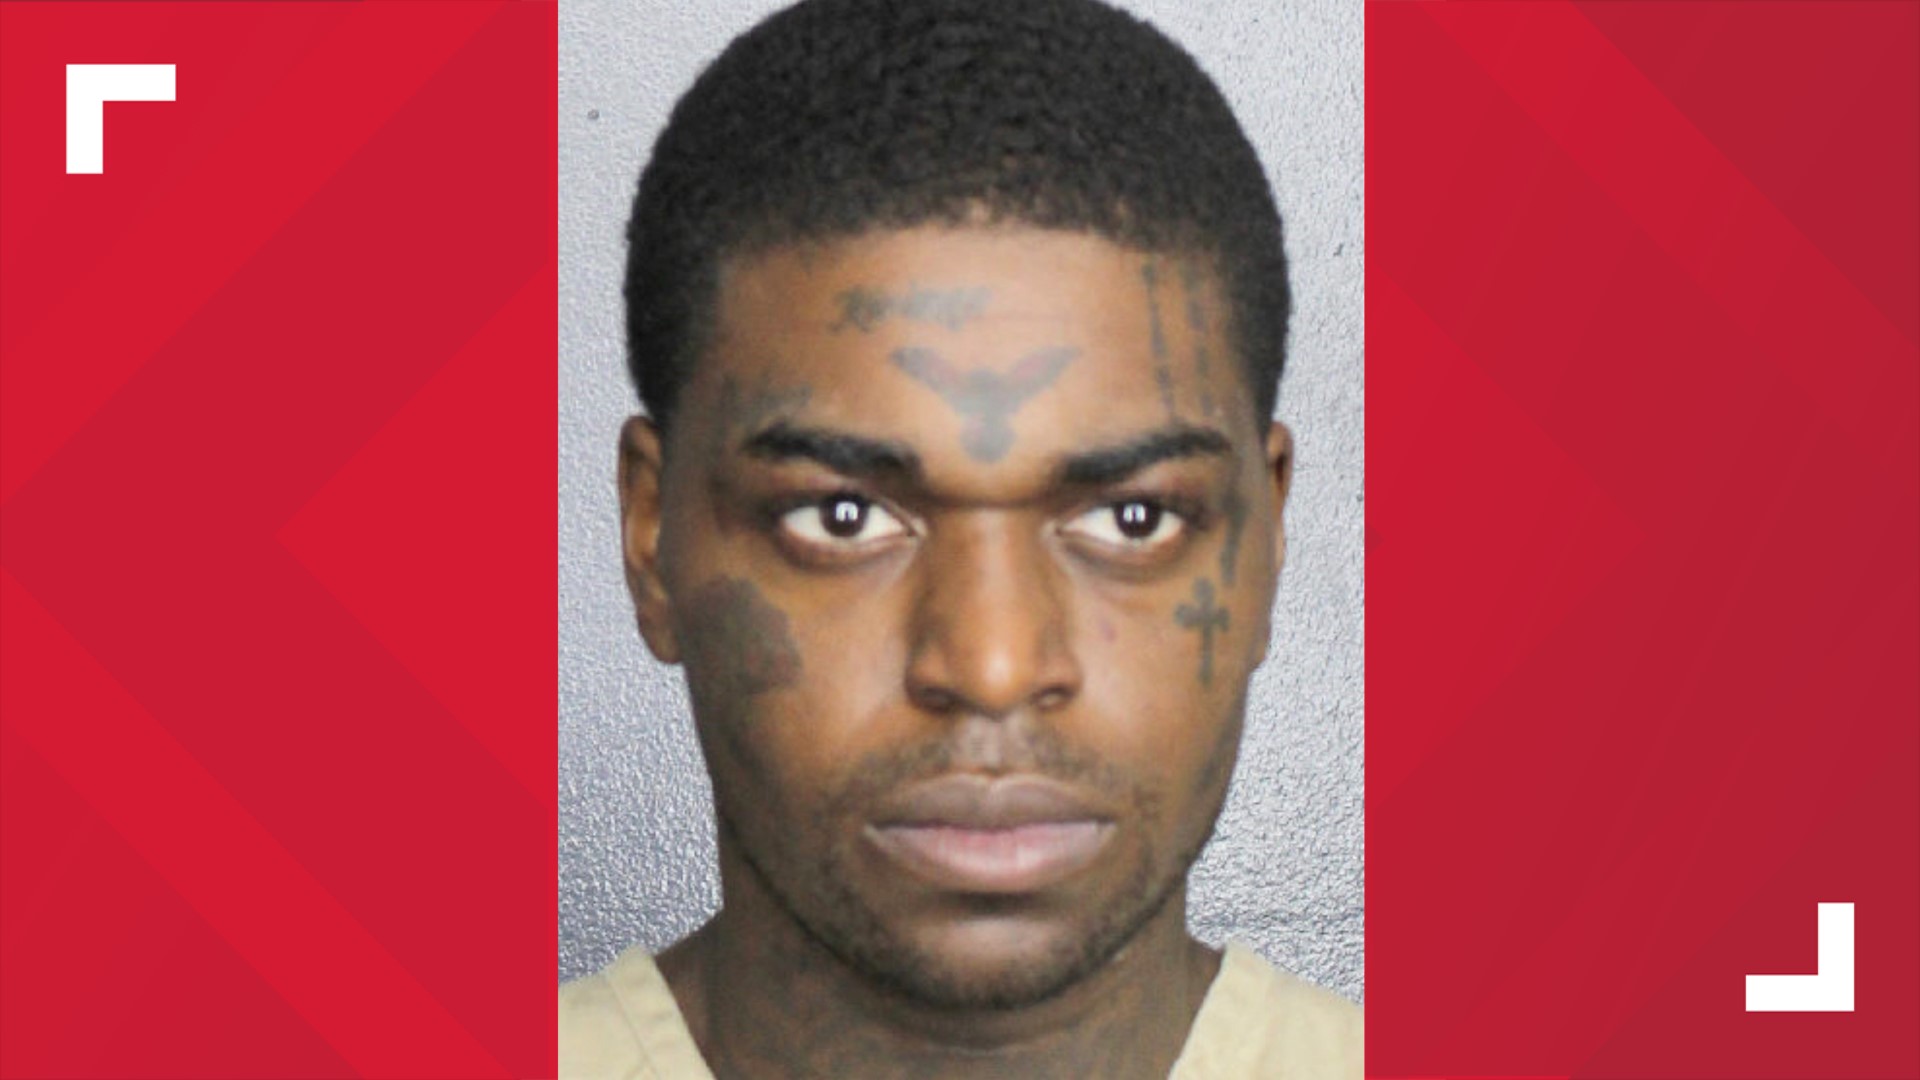 Rapper Kodak Black Is Arrested On Drug Charges In Florida